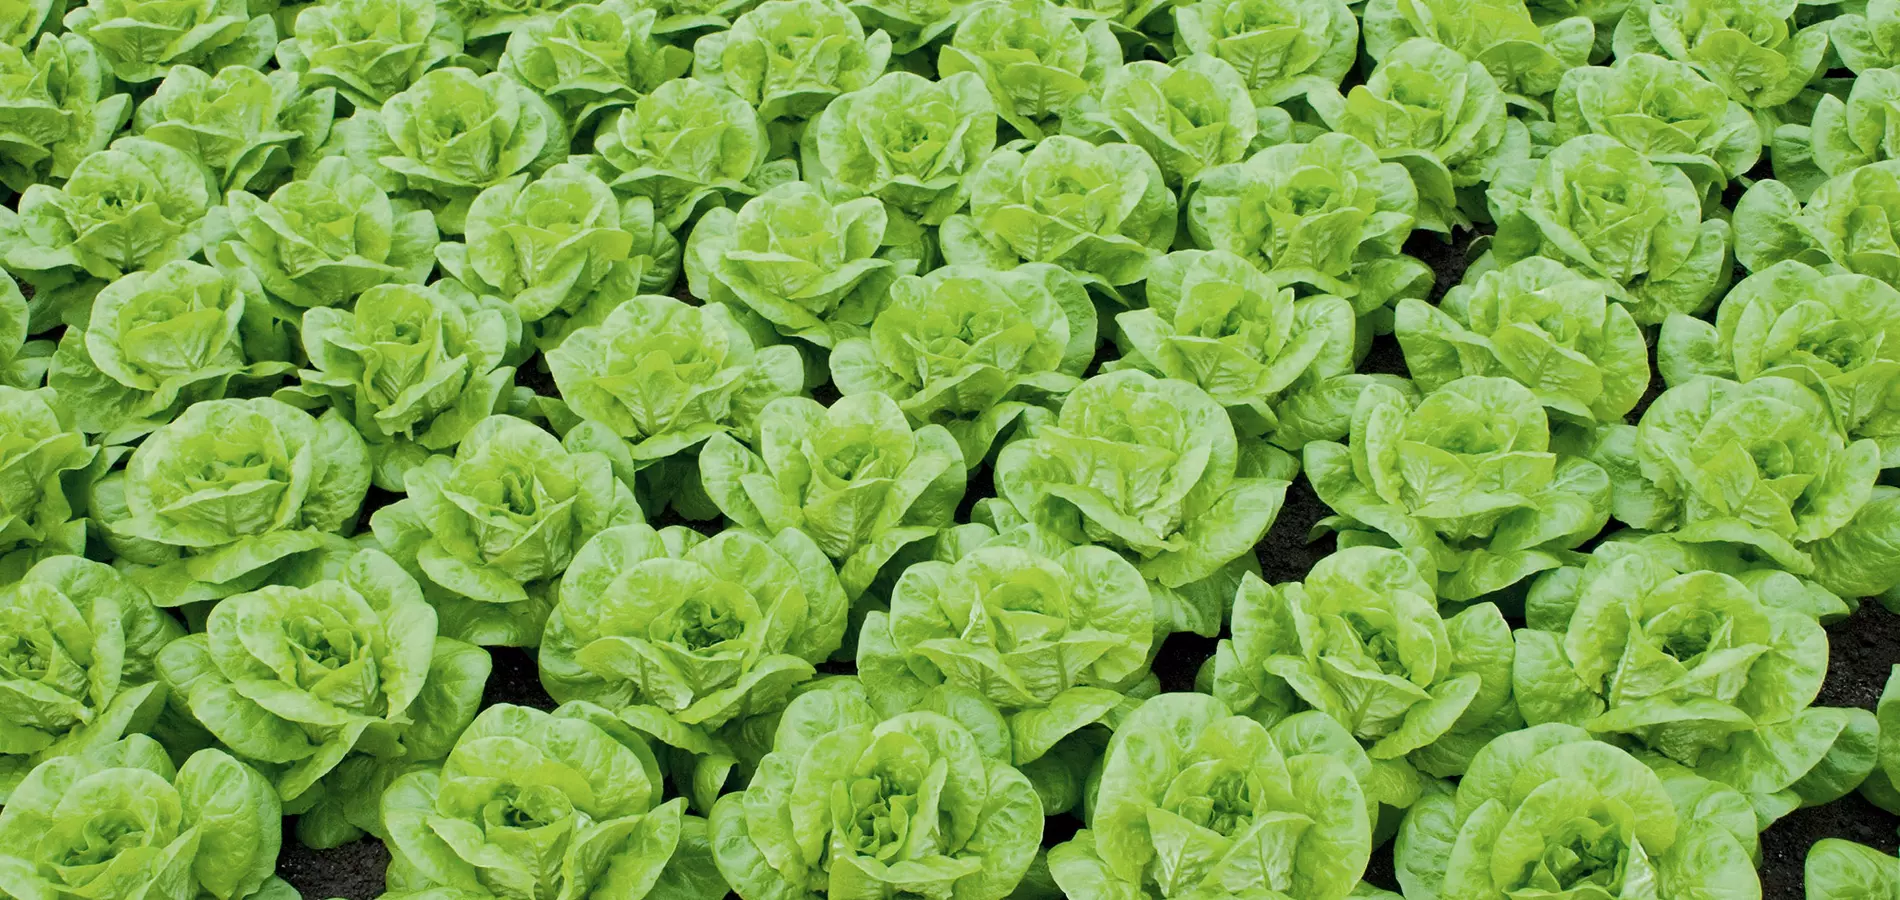 Lettuce production